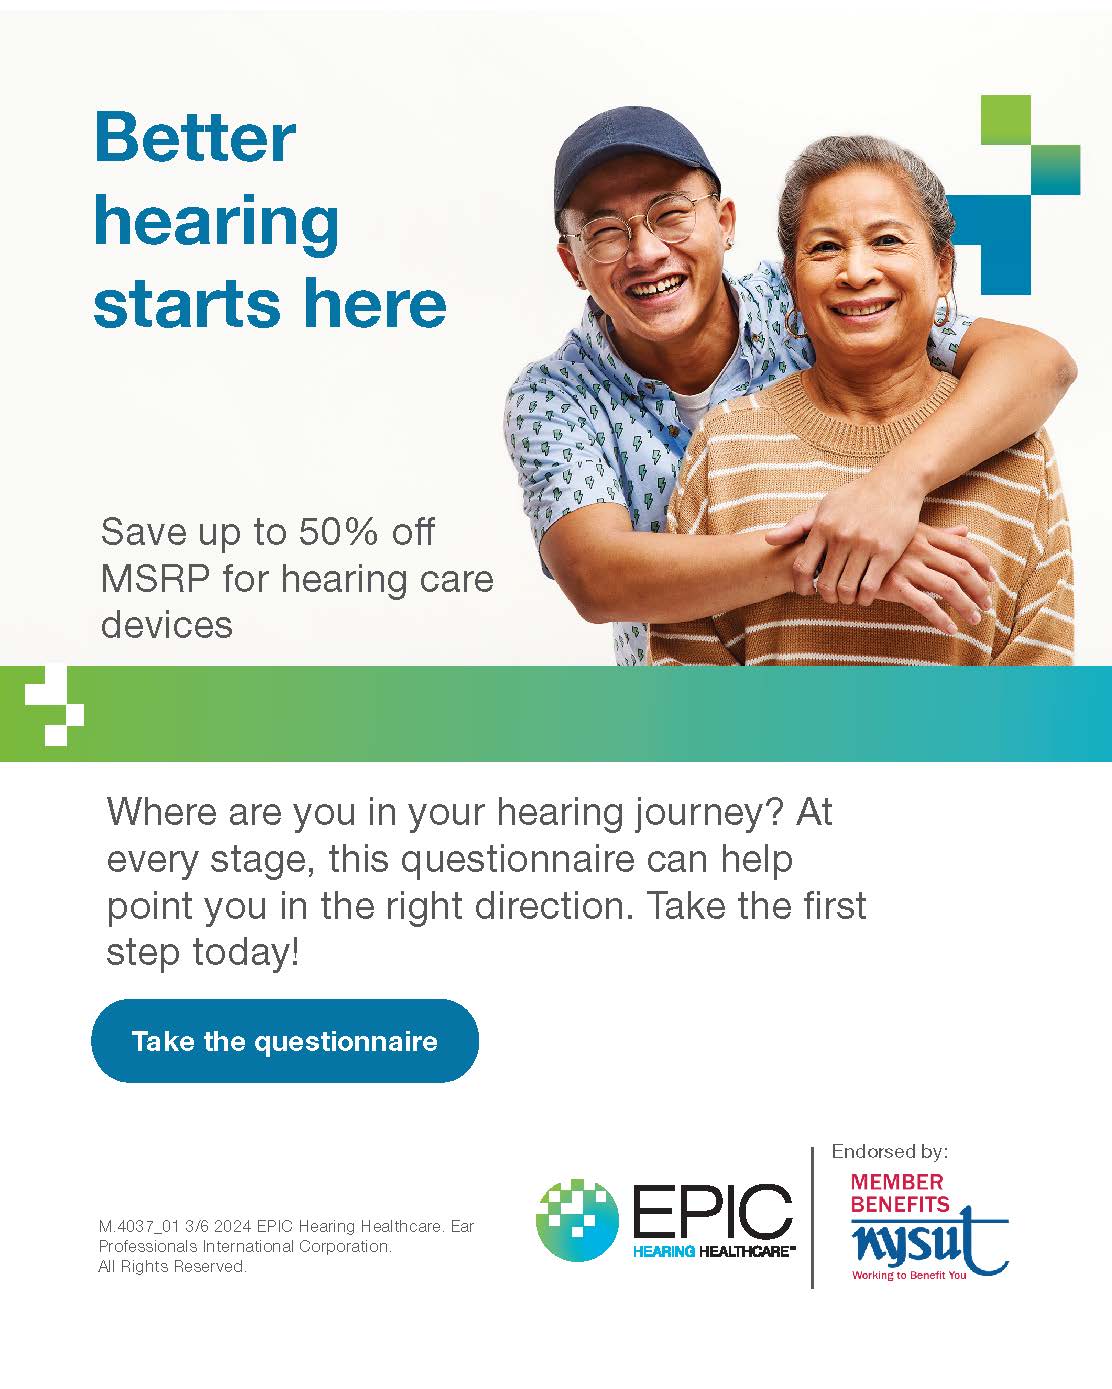 EPIC Hearing